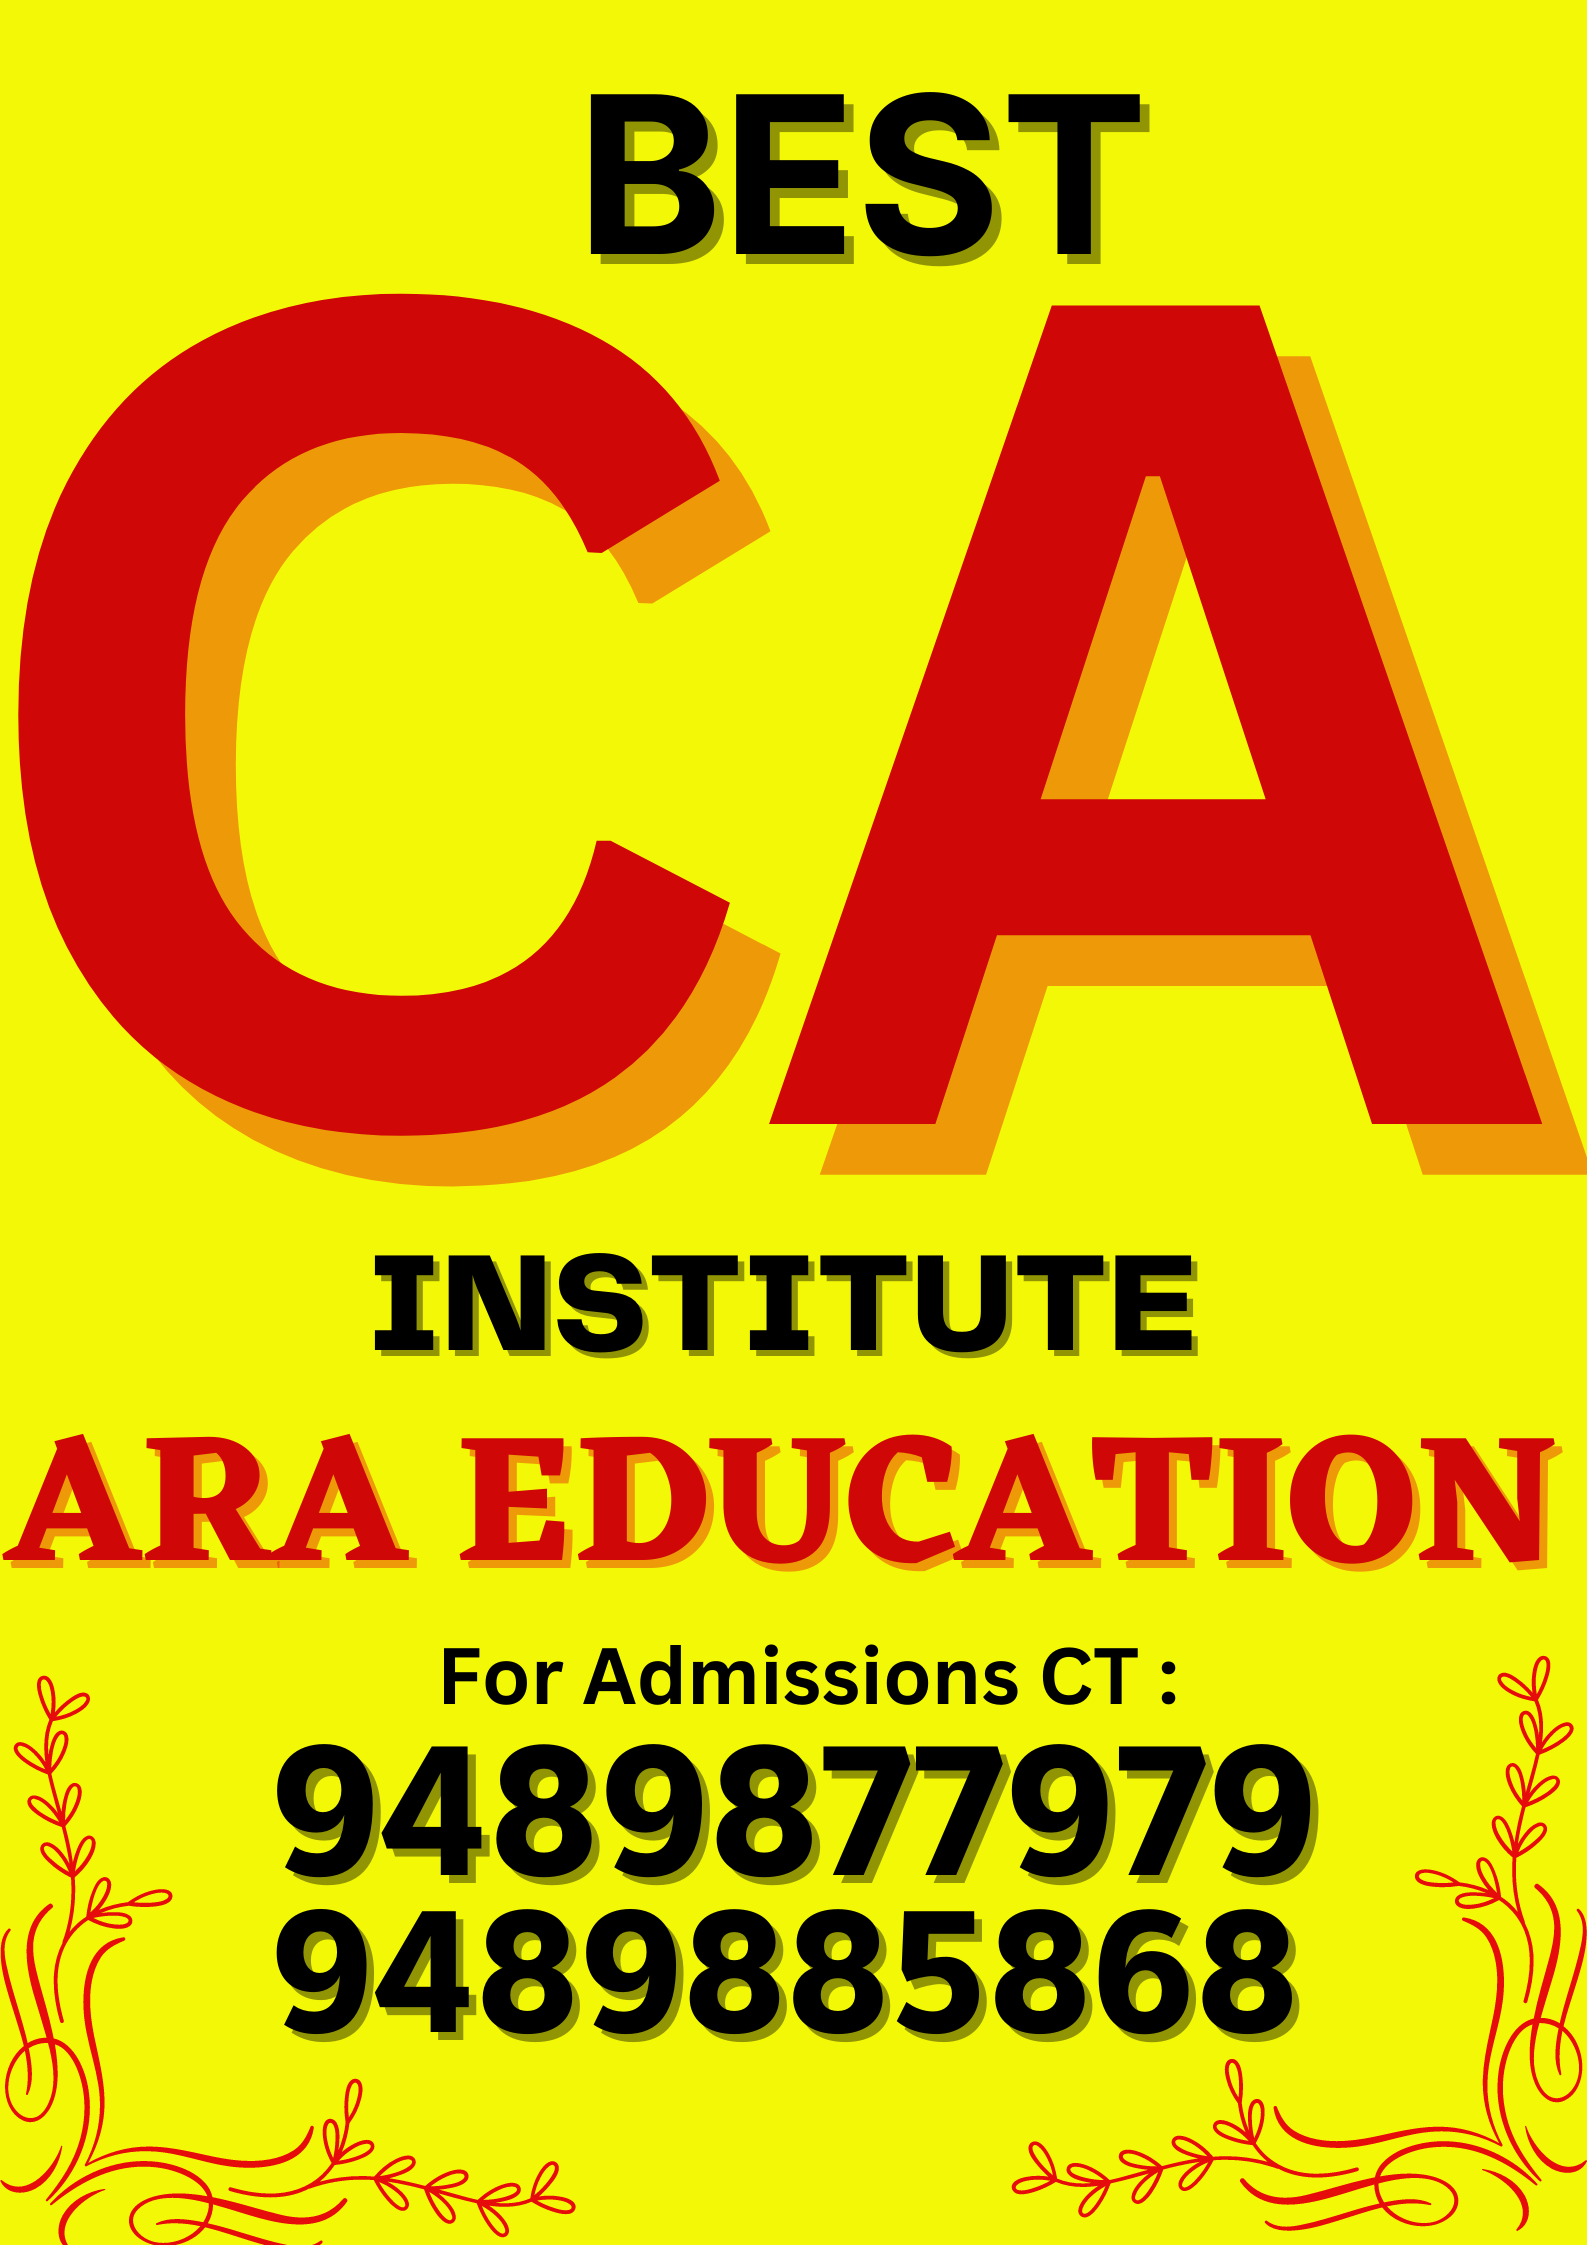 Best CA Institute